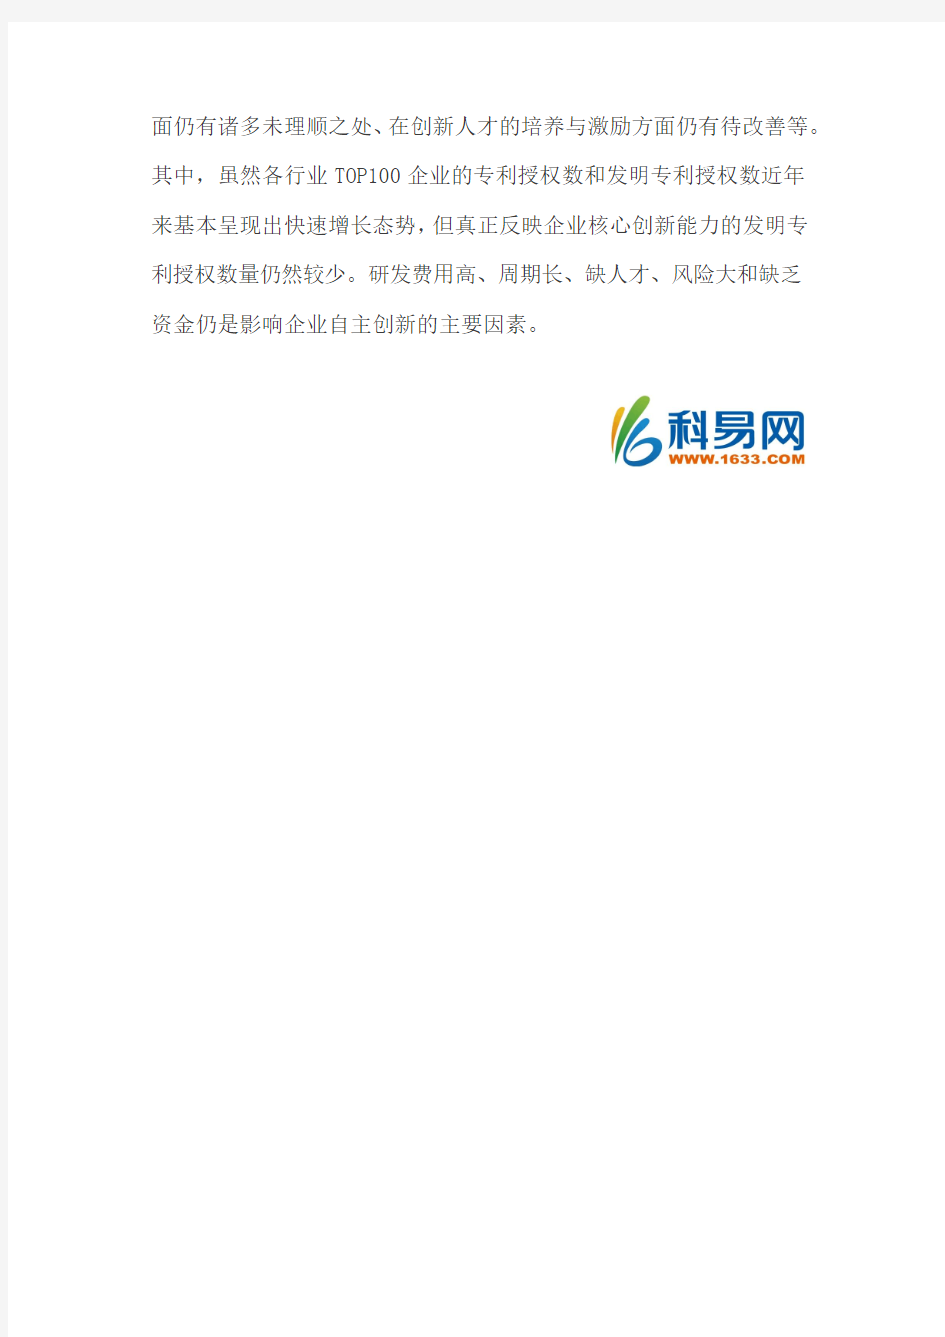 《2014中国企业自主创新评价报告》发布